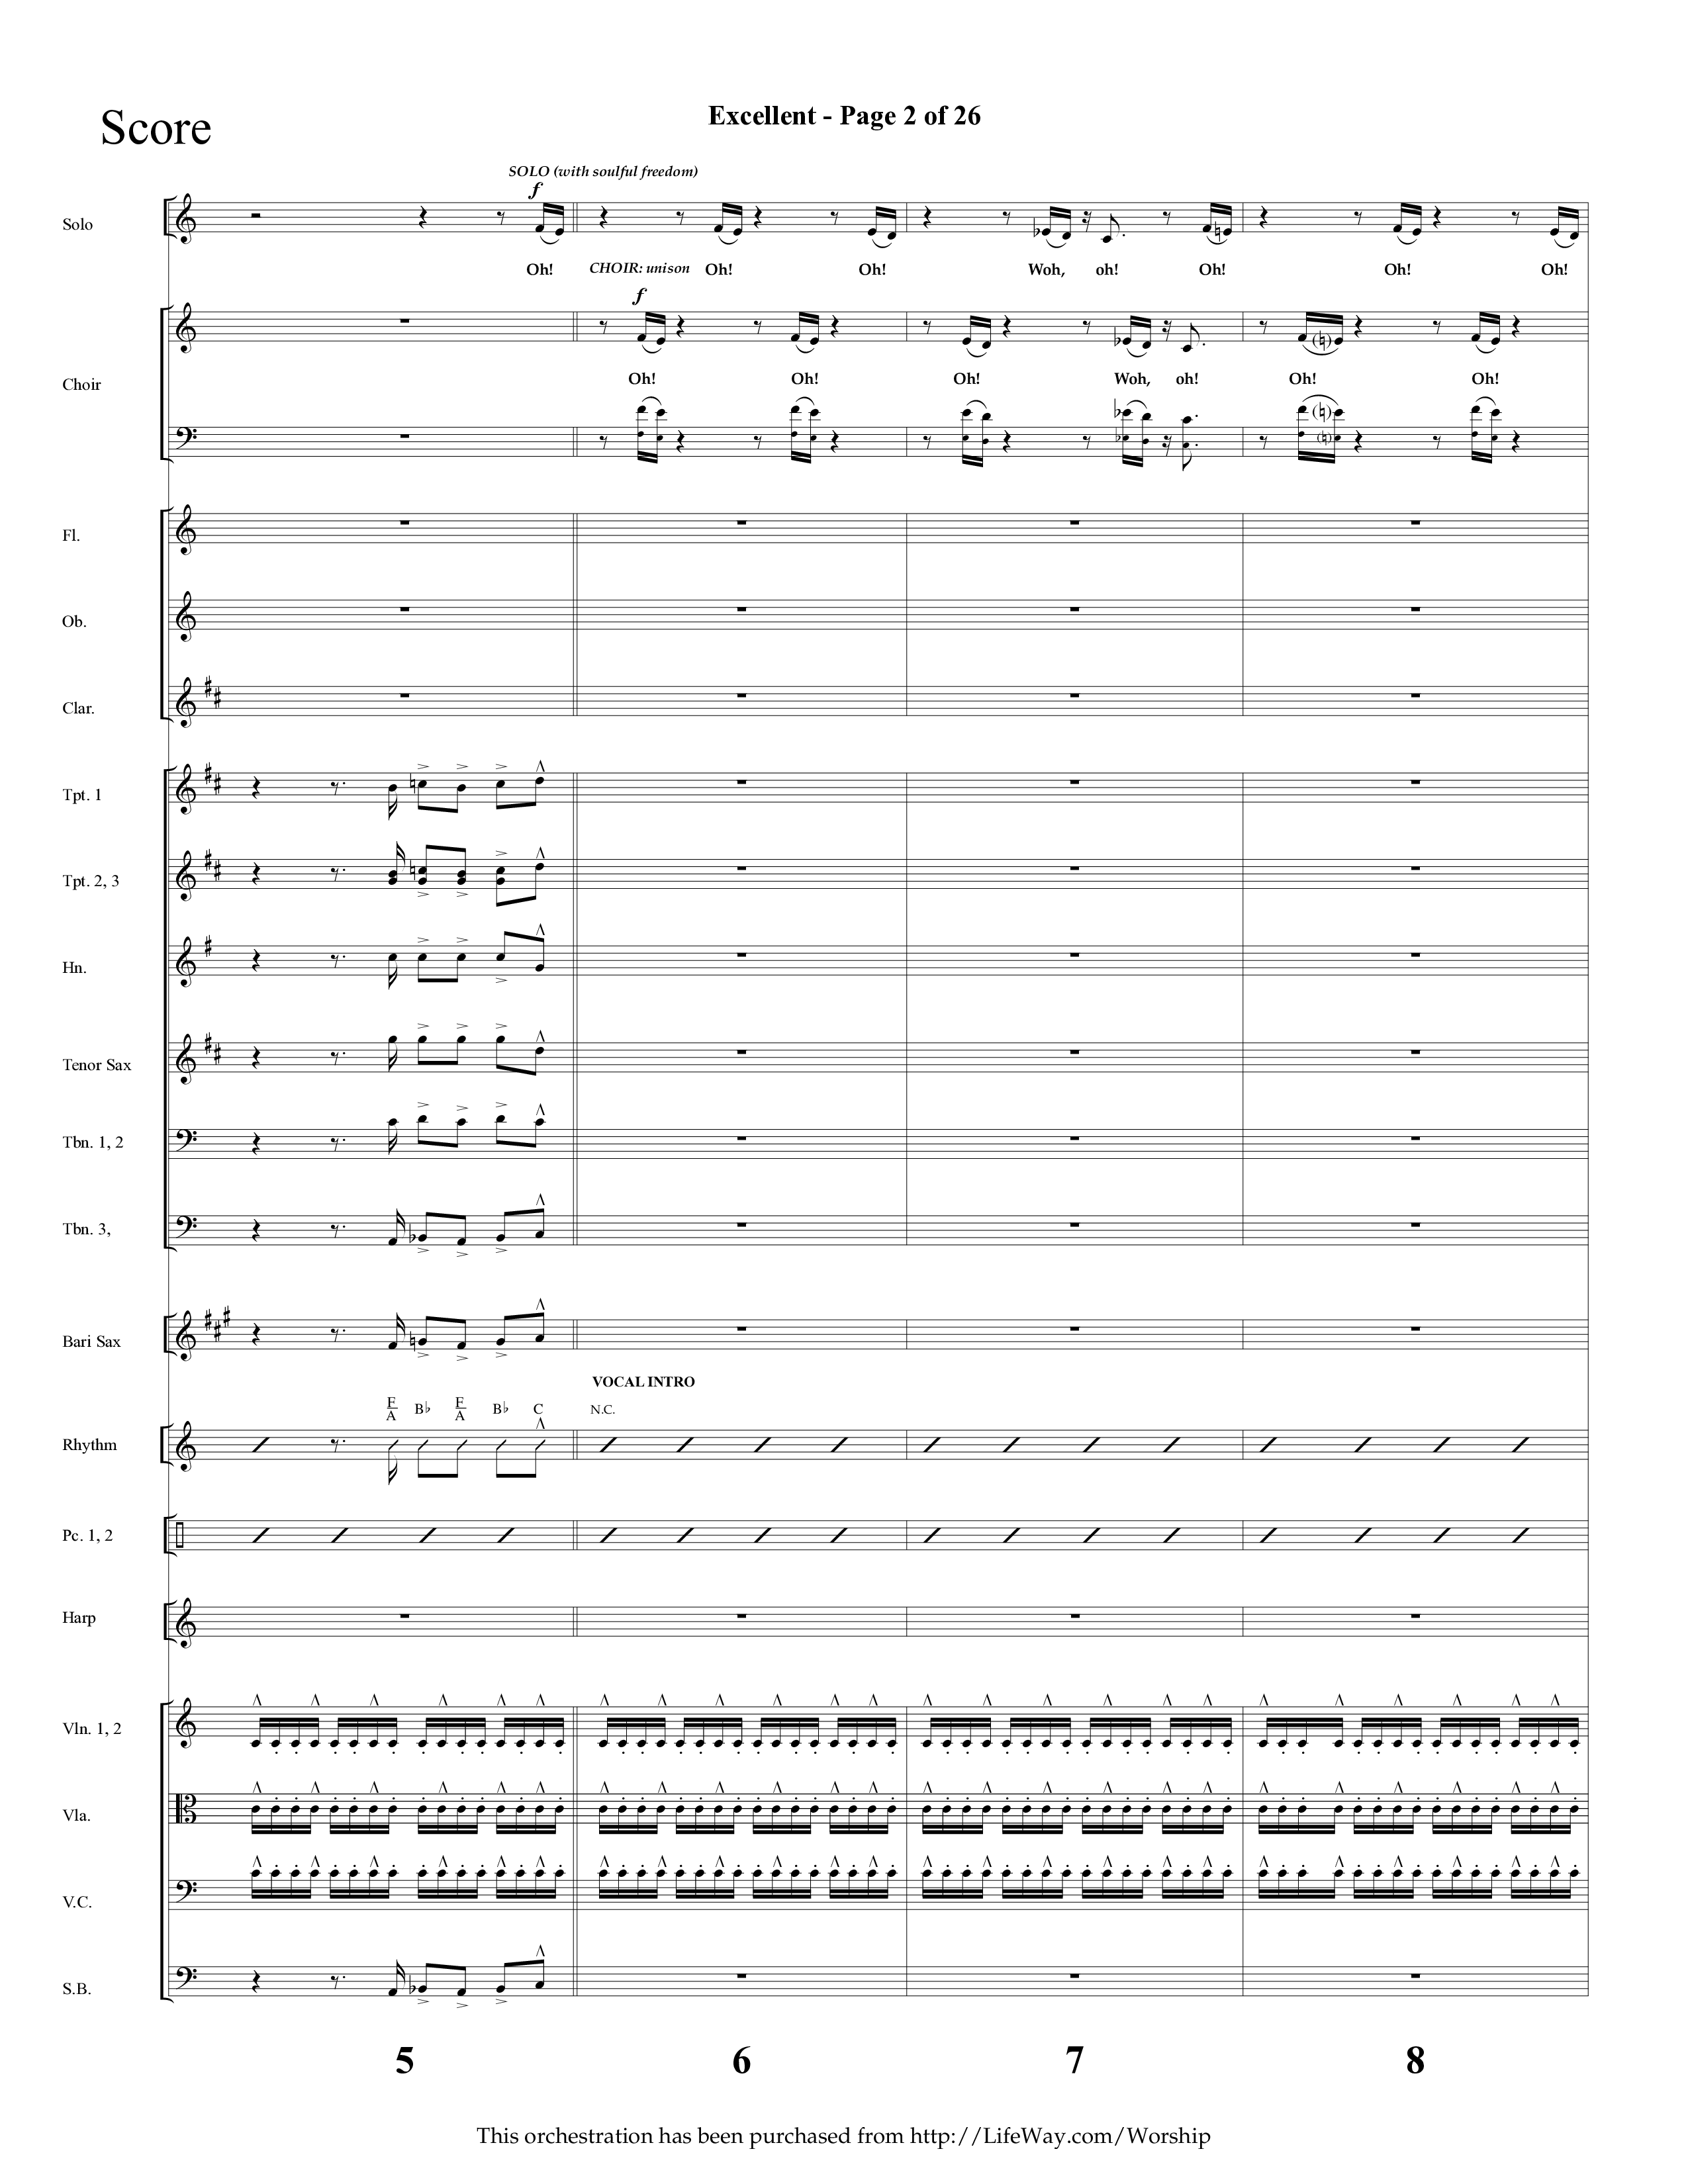 Excellent (Choral Anthem SATB) Orchestration (Lifeway Choral / Arr. Cliff Duren)